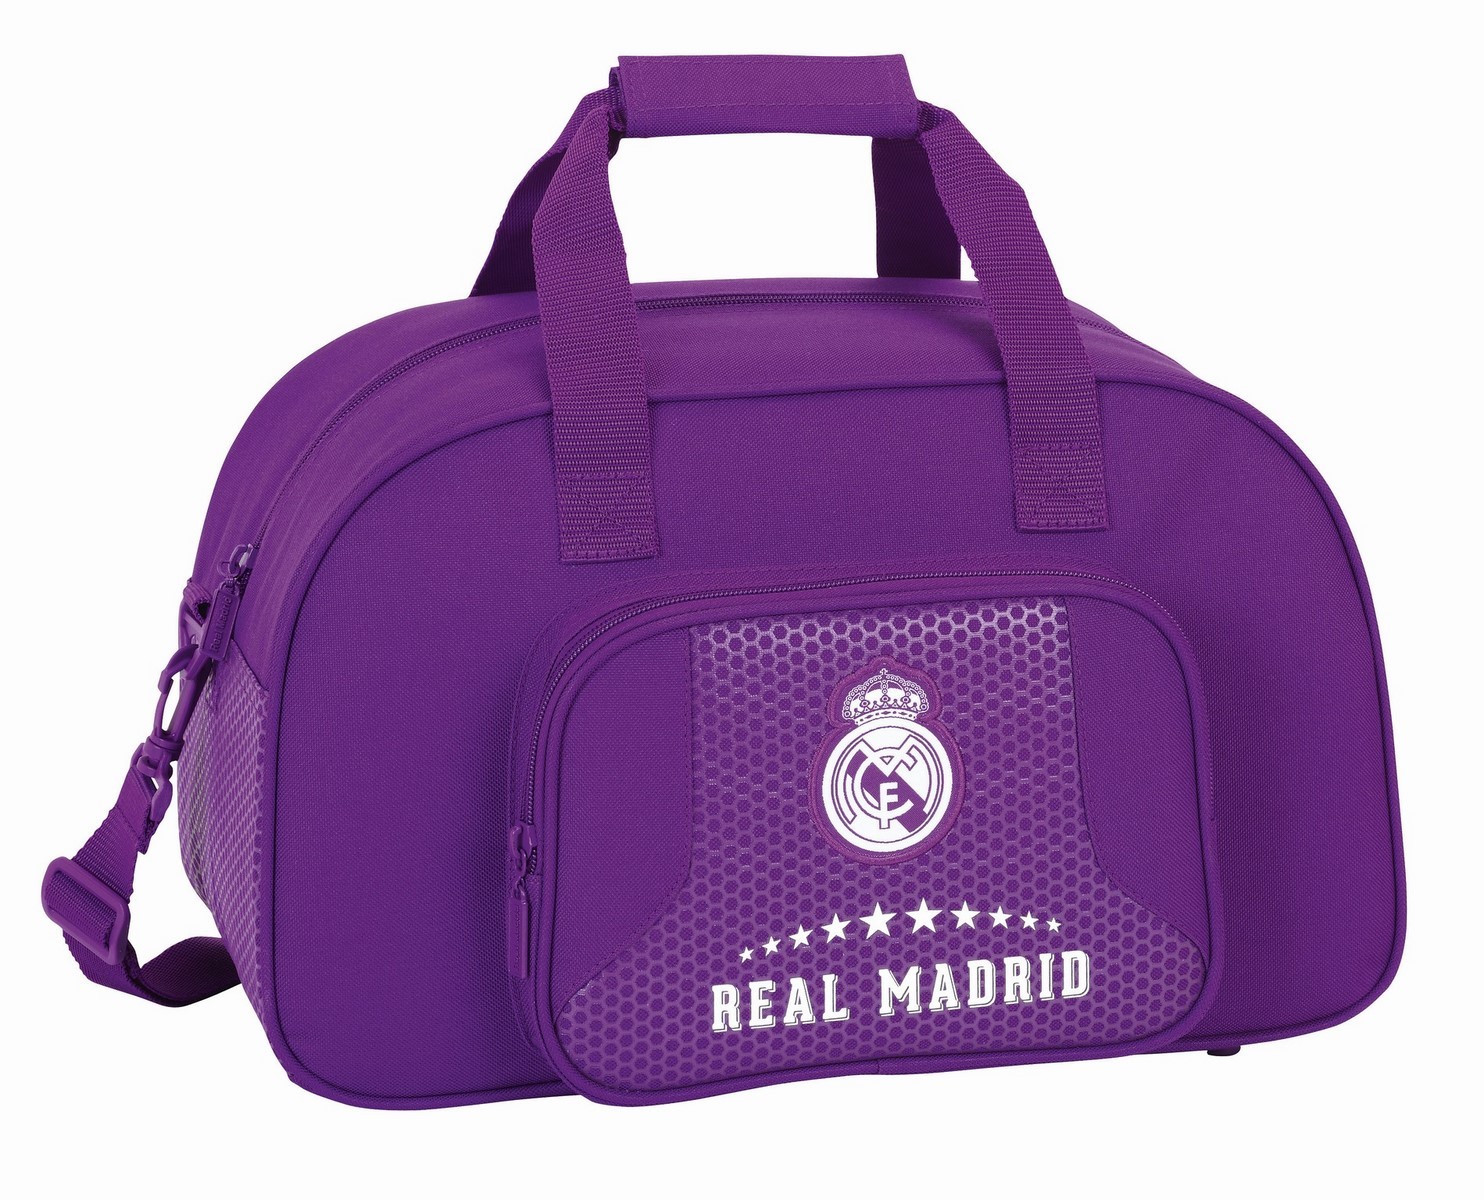 Bolsas de deporte, maletas o neceser del Real Madrid